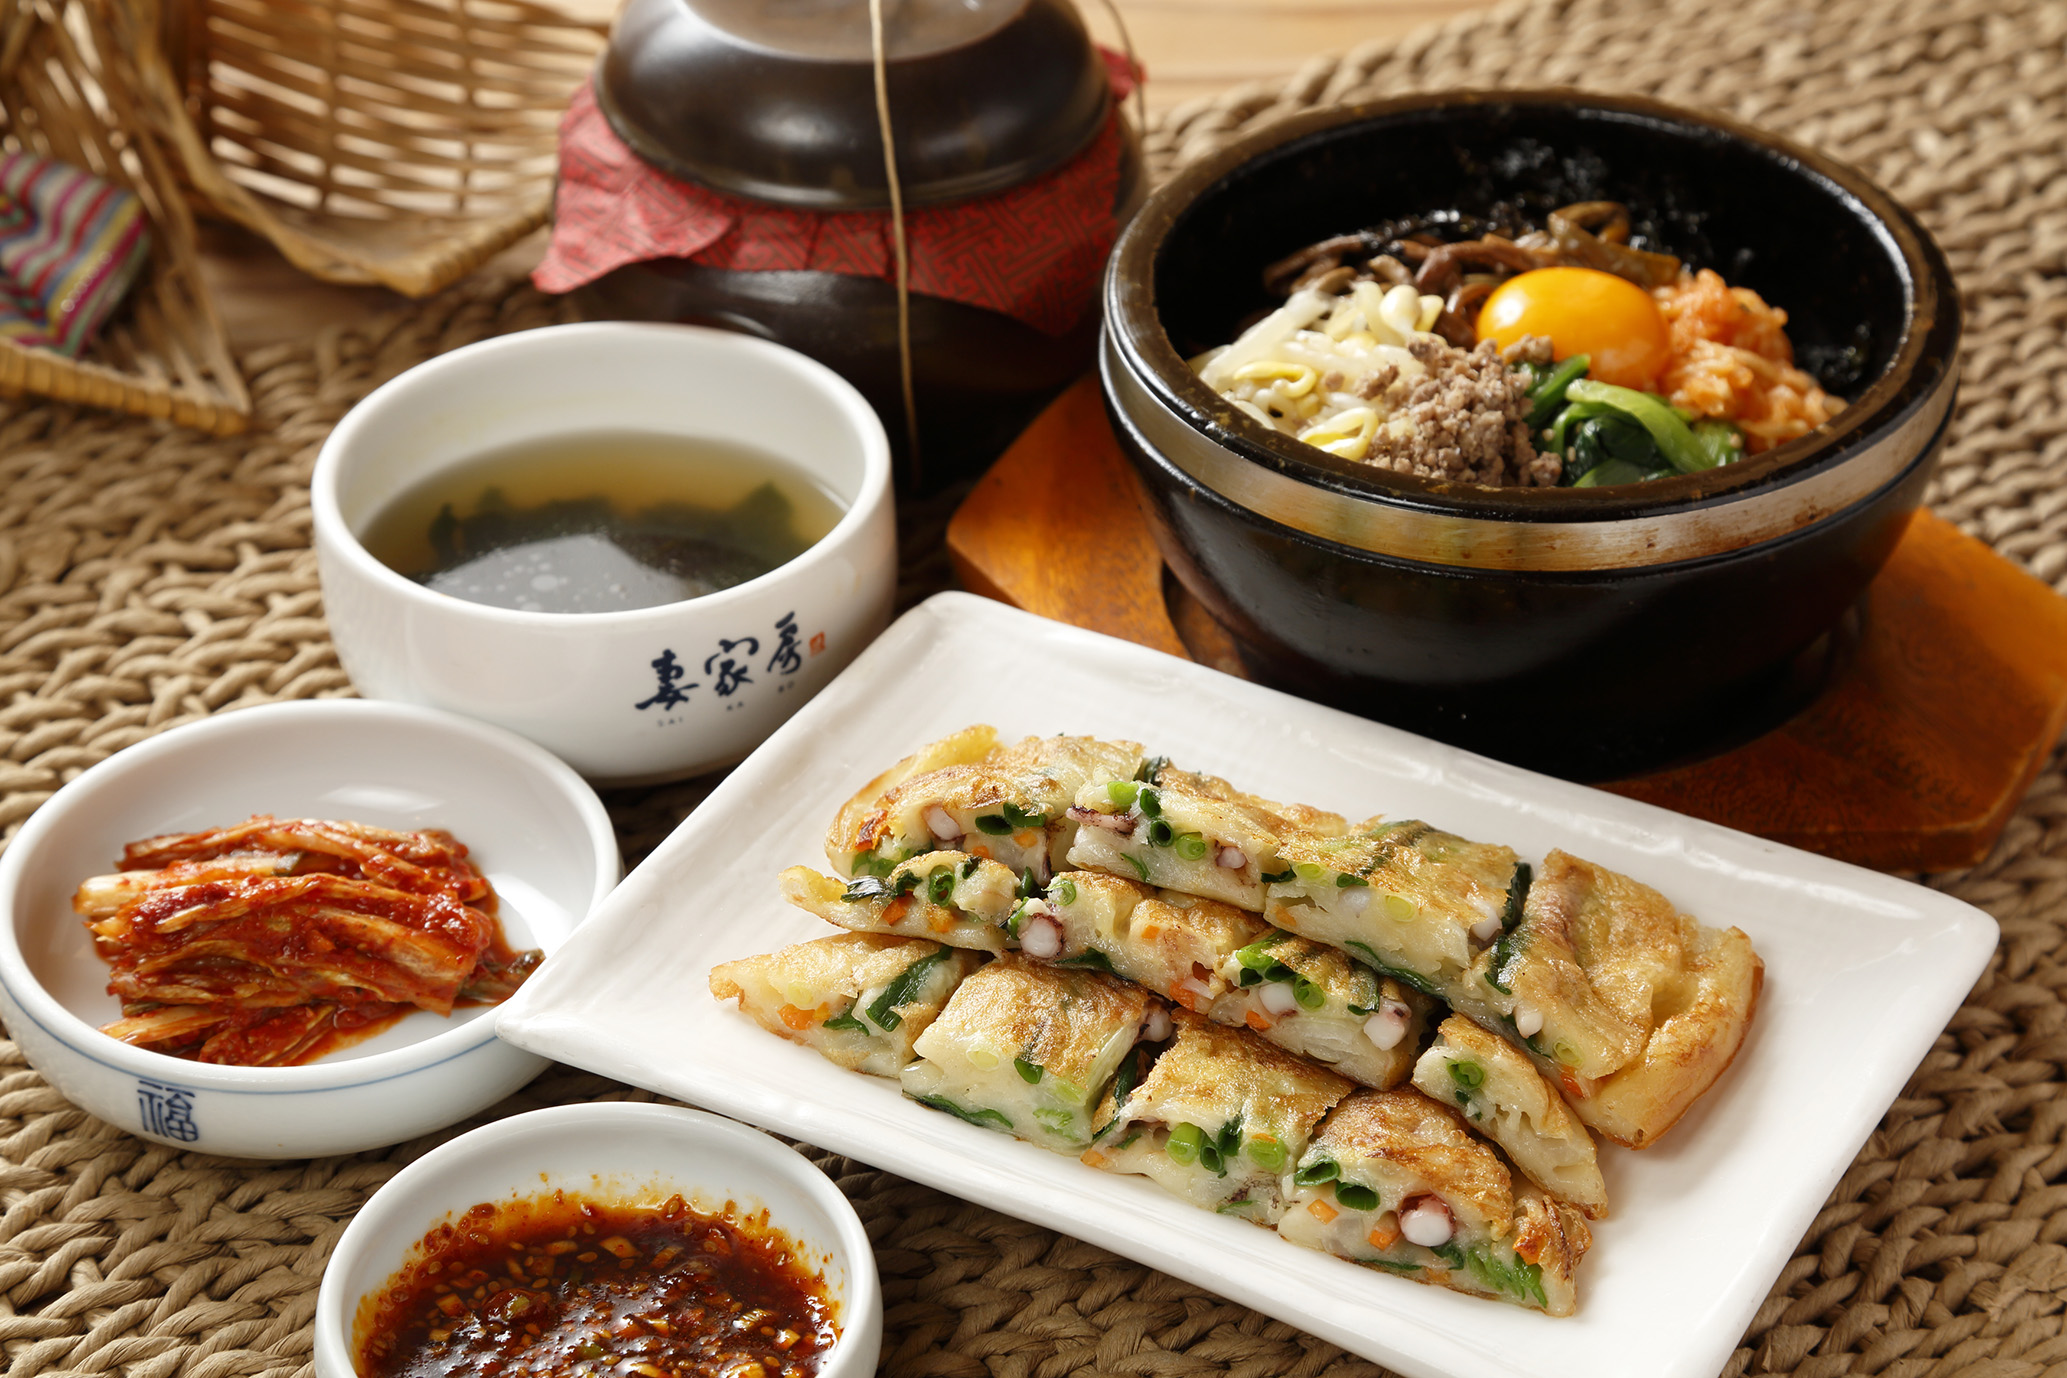 【本場韓国の家庭料理】お腹も心も満たす石焼ビビンバのセット